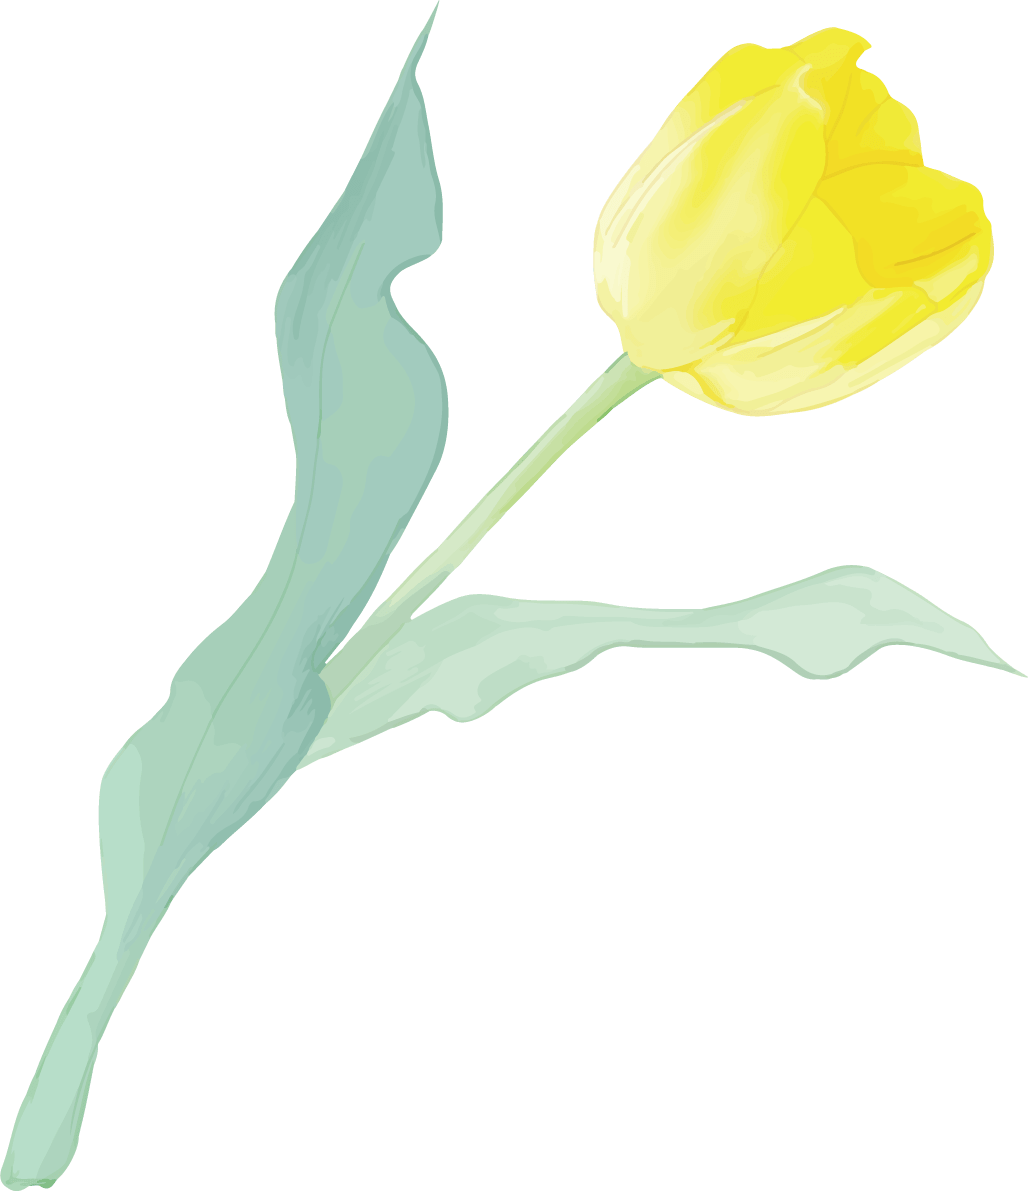 リアル綺麗チューリップイラスト 黄色の花が右に傾き咲く イラスト素材 超多くの無料かわいいイラスト素材